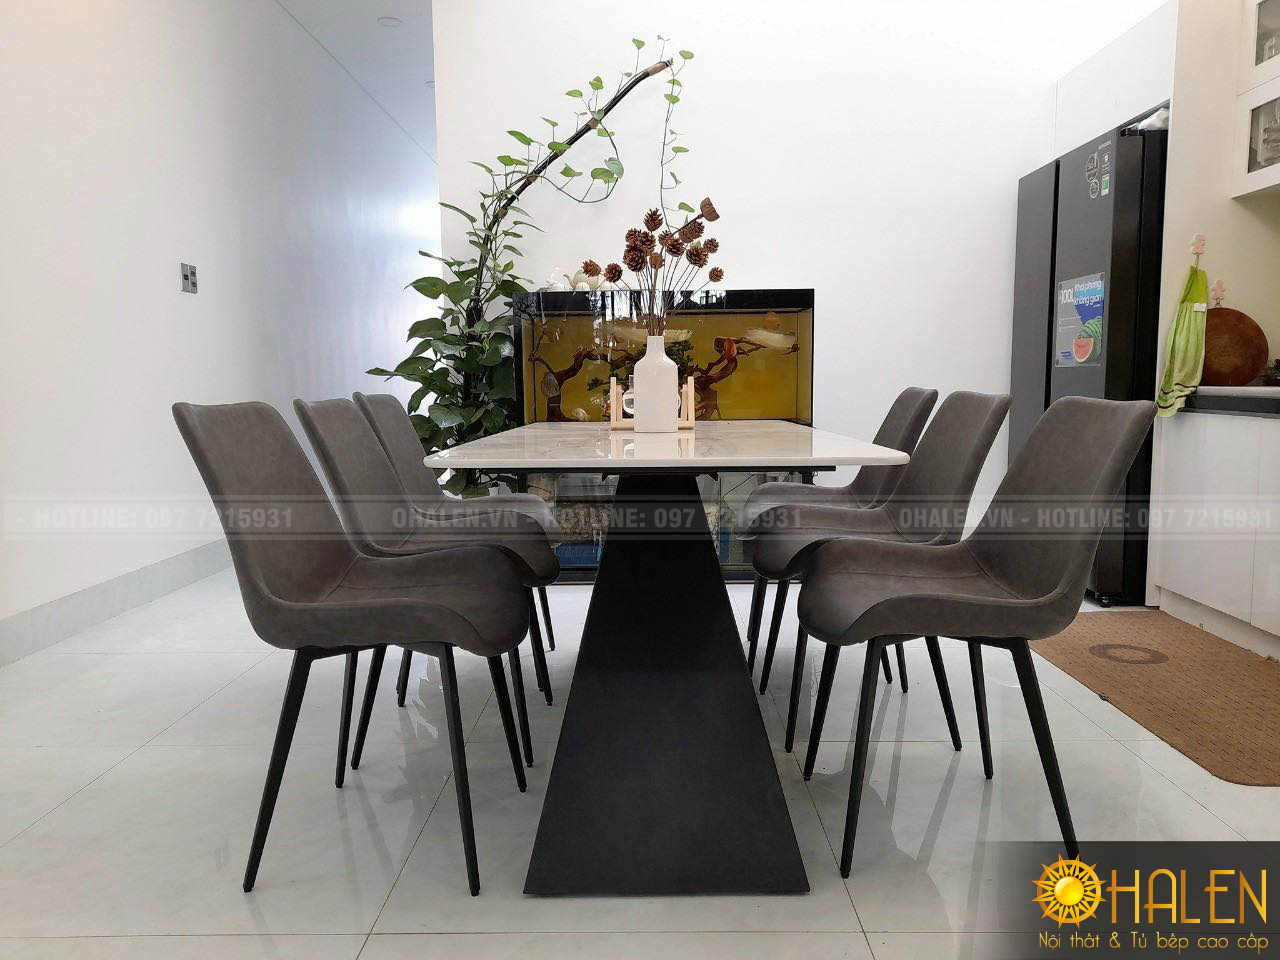 Mẫu bàn ăn theo phong cách hiện đại rất phù hợp cho các phòng bếp chung cư và nhà dân